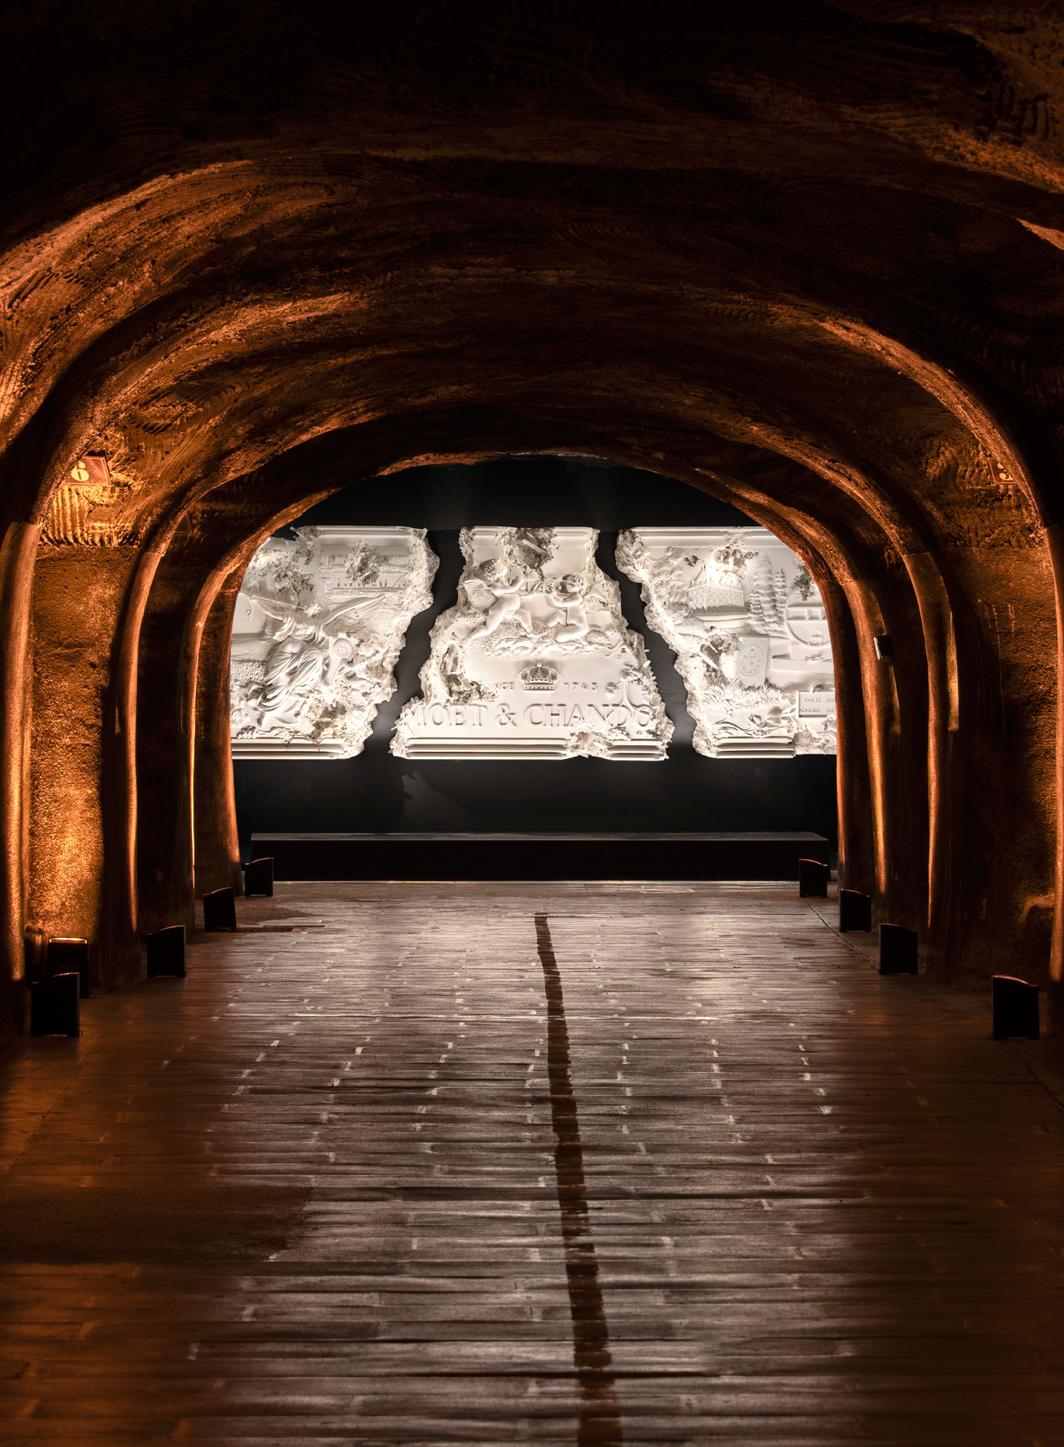 Moët & Chandon expose Daniel Arsham dans ses caves historiques.